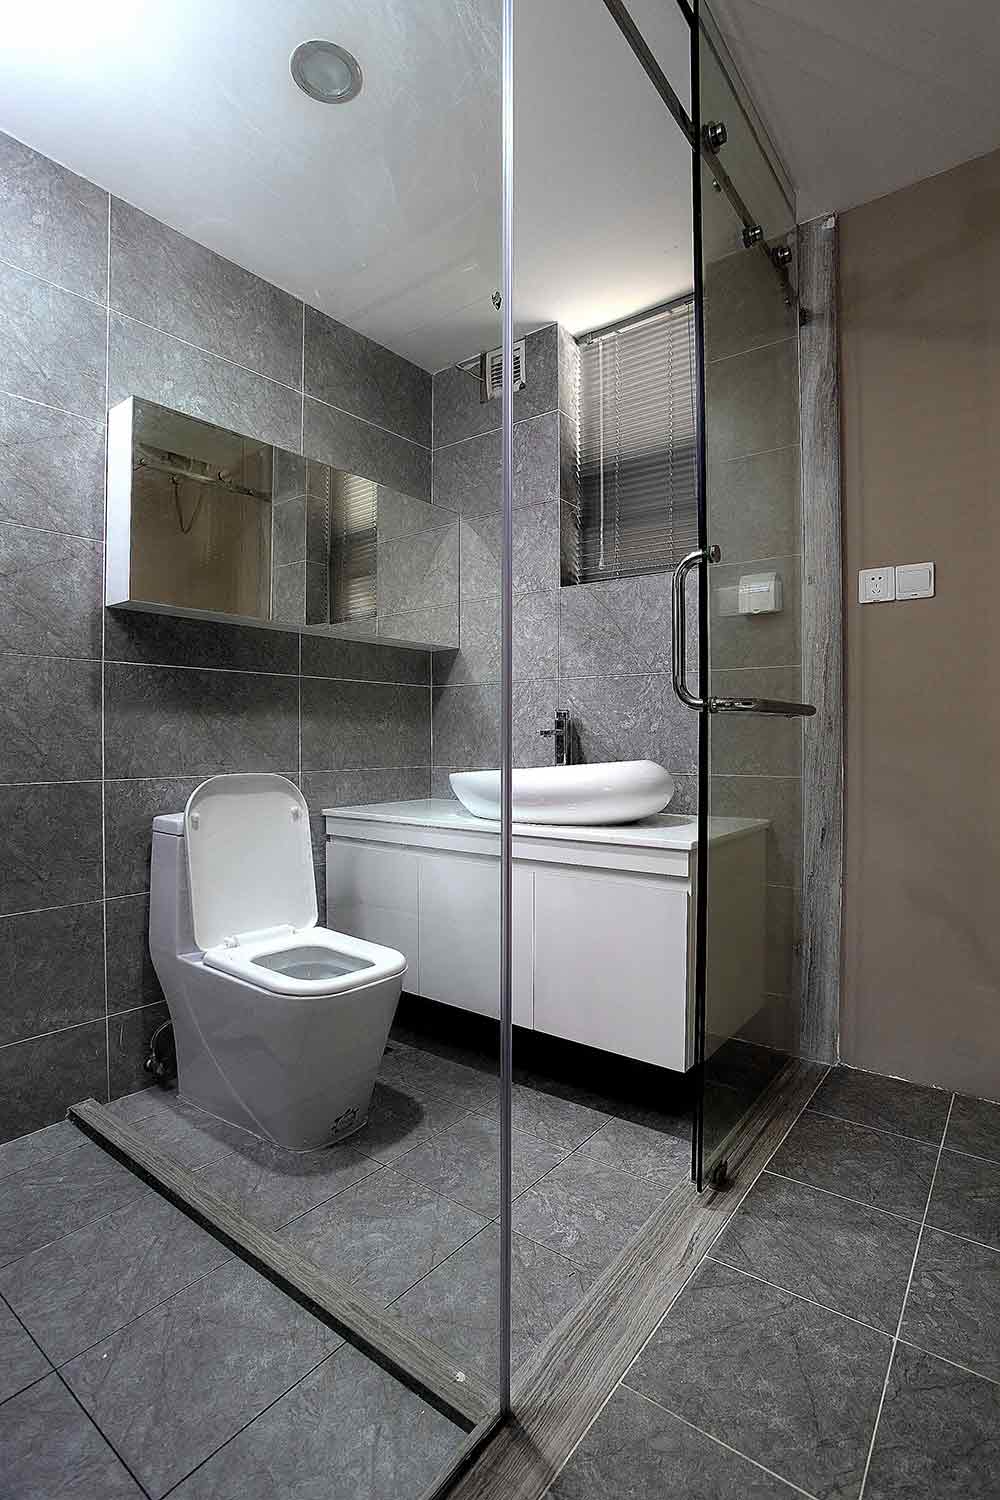 卫生间以玻璃隔断的形式清晰划分出了干湿区域，空间整齐利落而干净舒适。